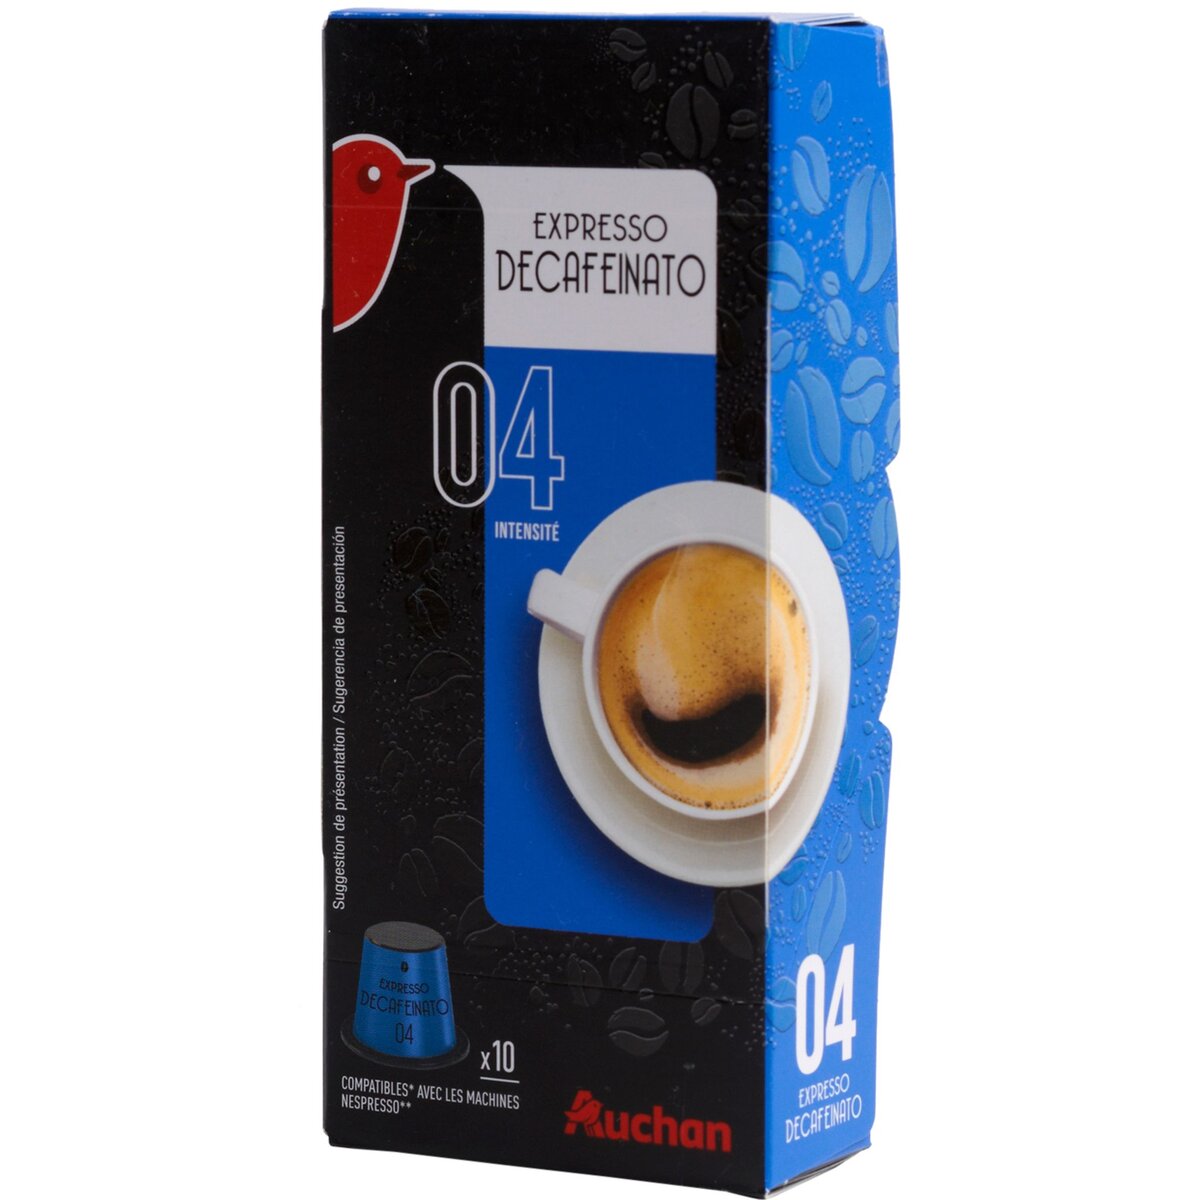 AUCHAN Auchan café expresso decafeinato capsule x10 -52g